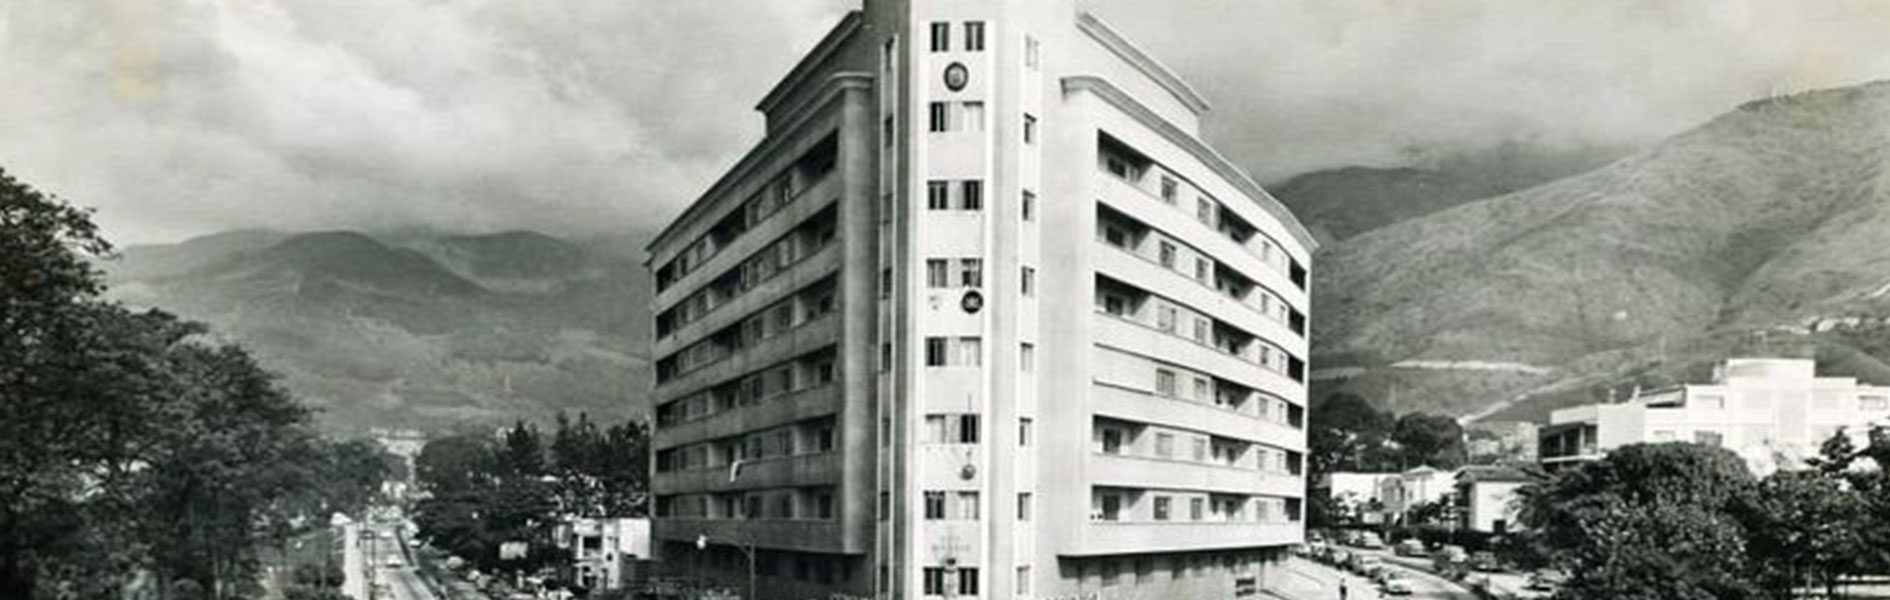 Edificio Titania Caracas